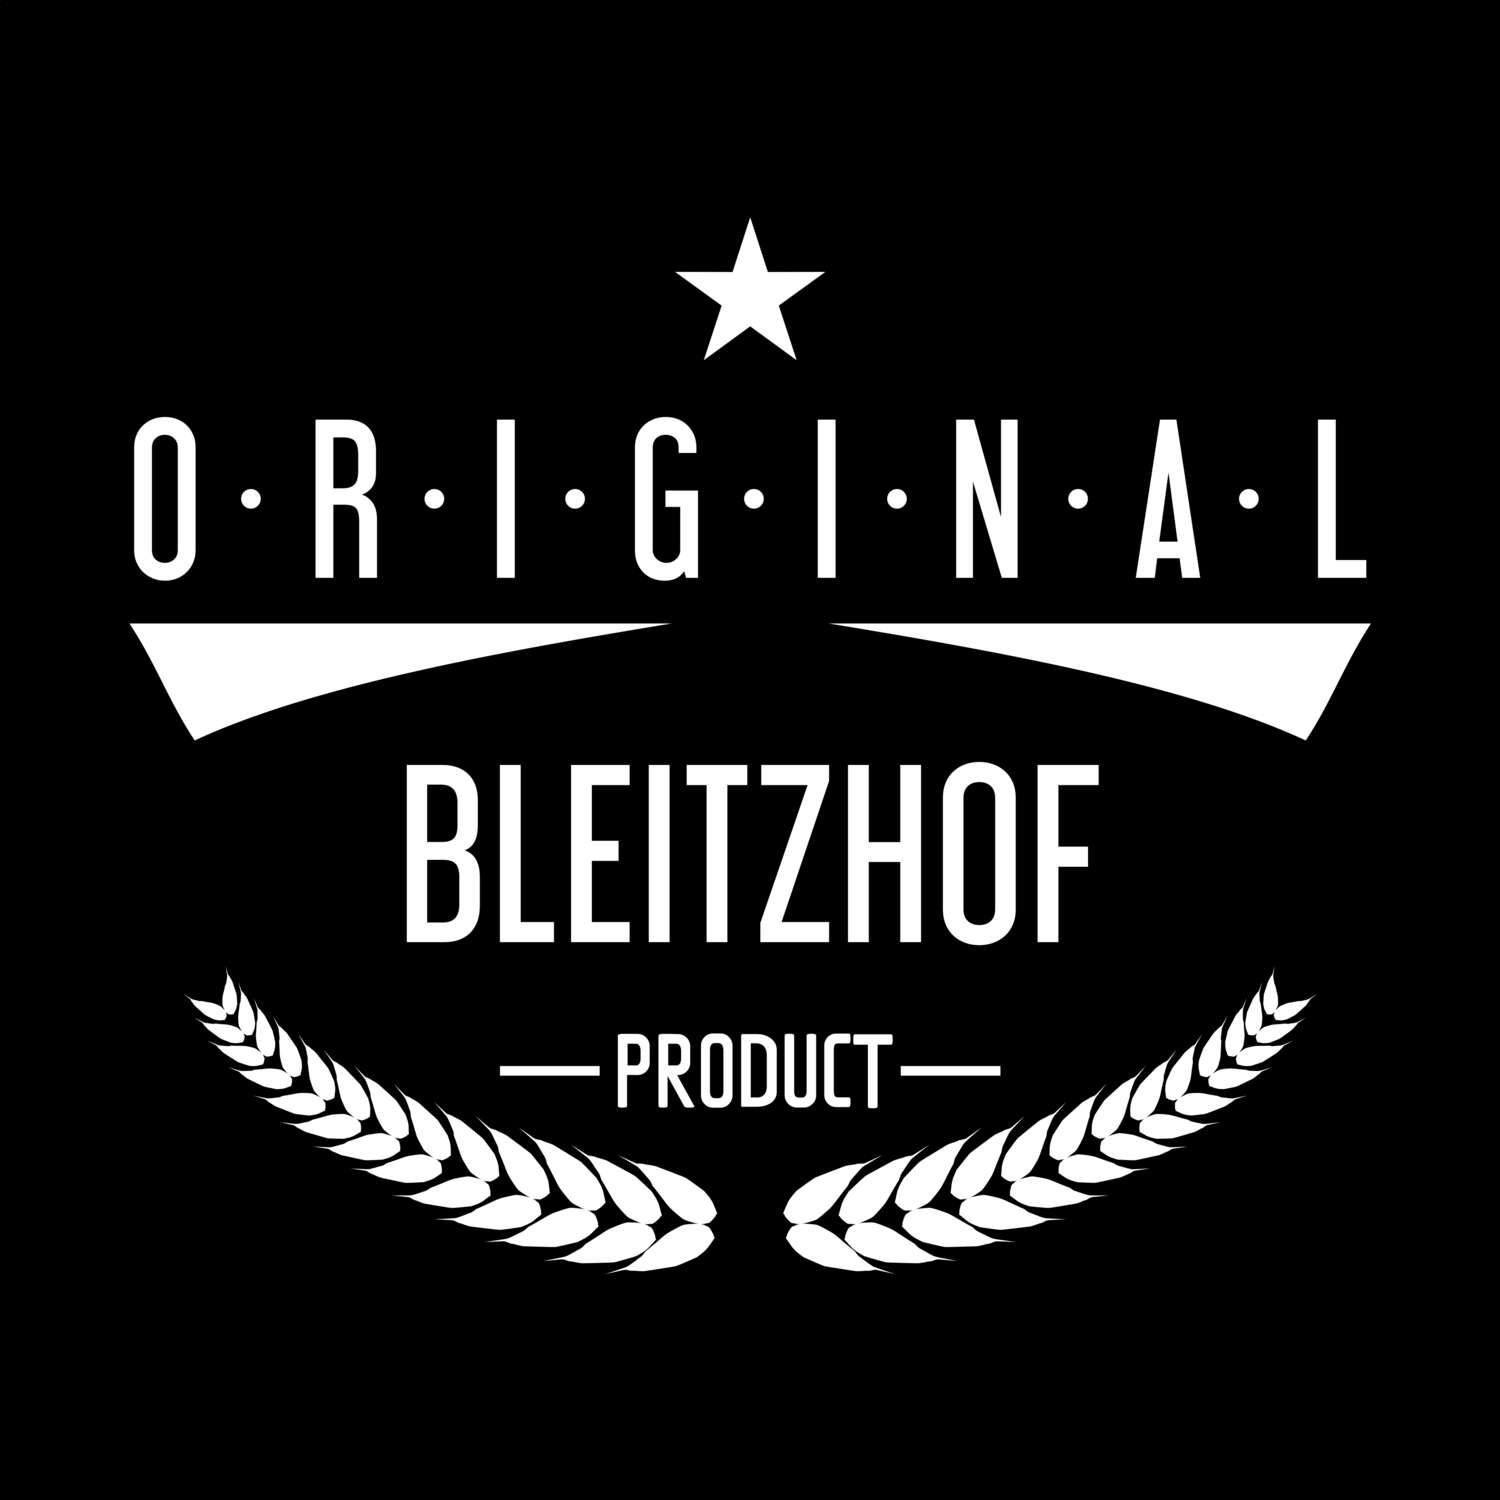 Bleitzhof T-Shirt »Original Product«